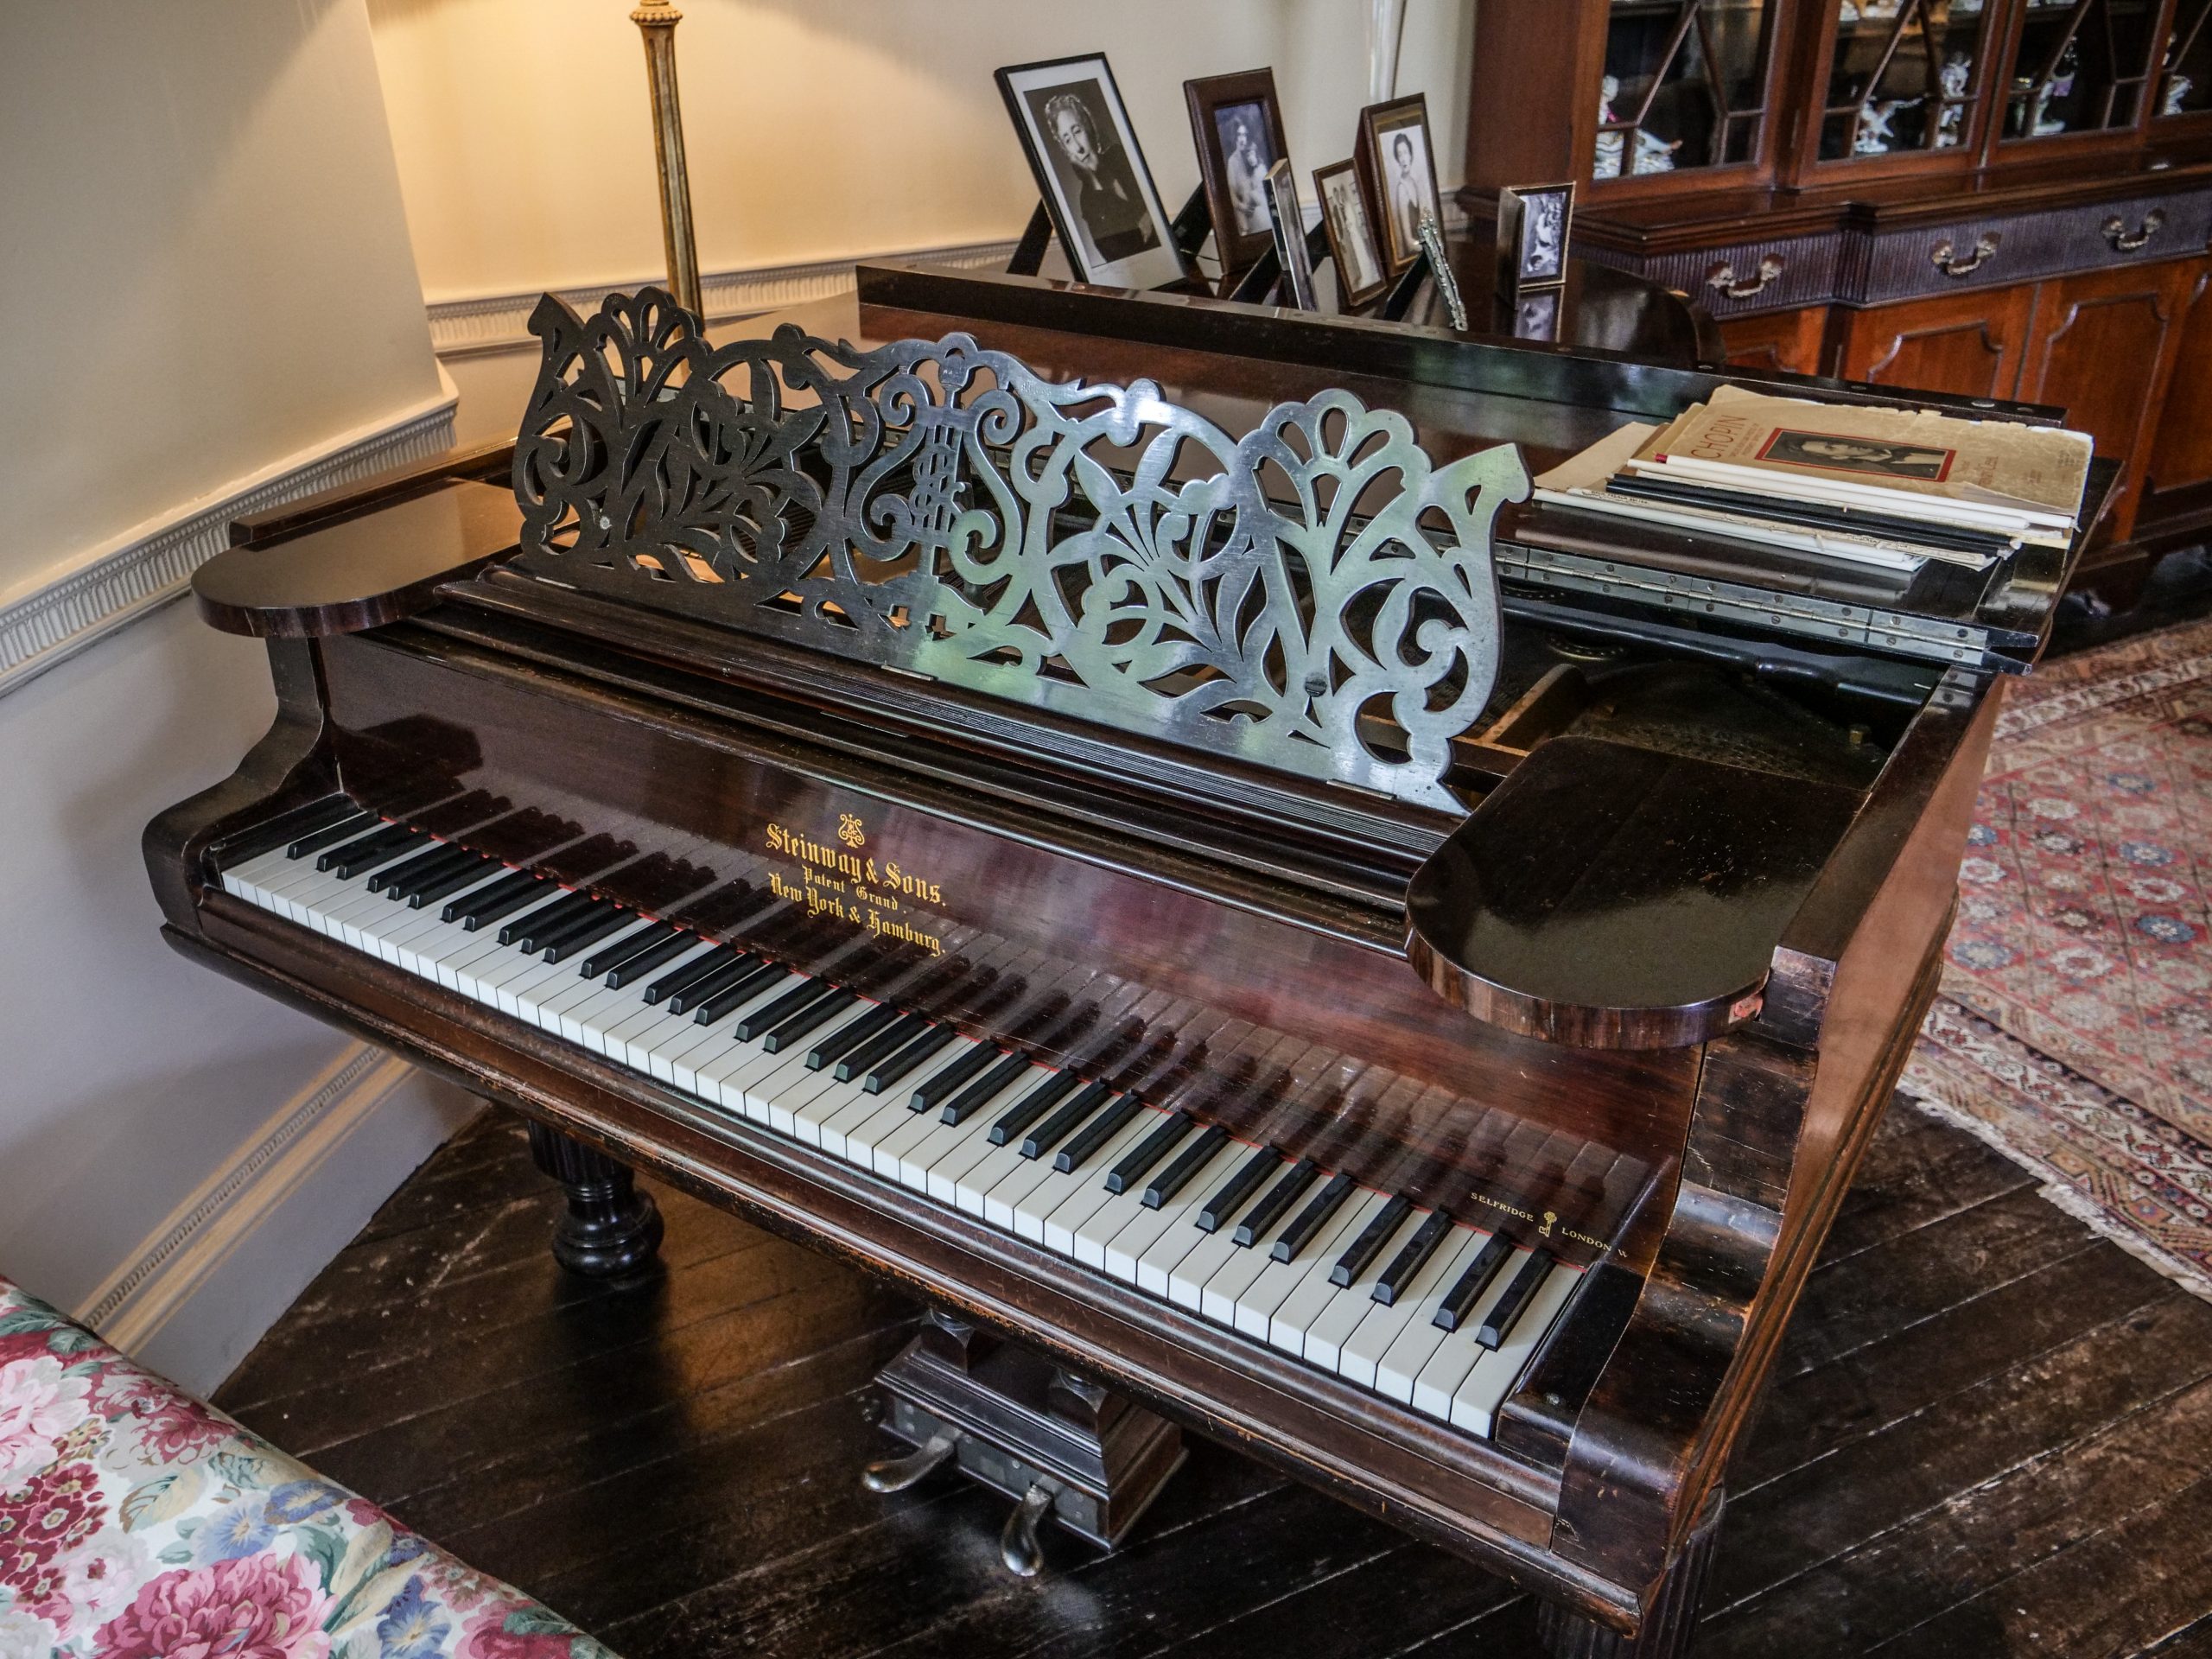 Agatha Christie's piano Greenway